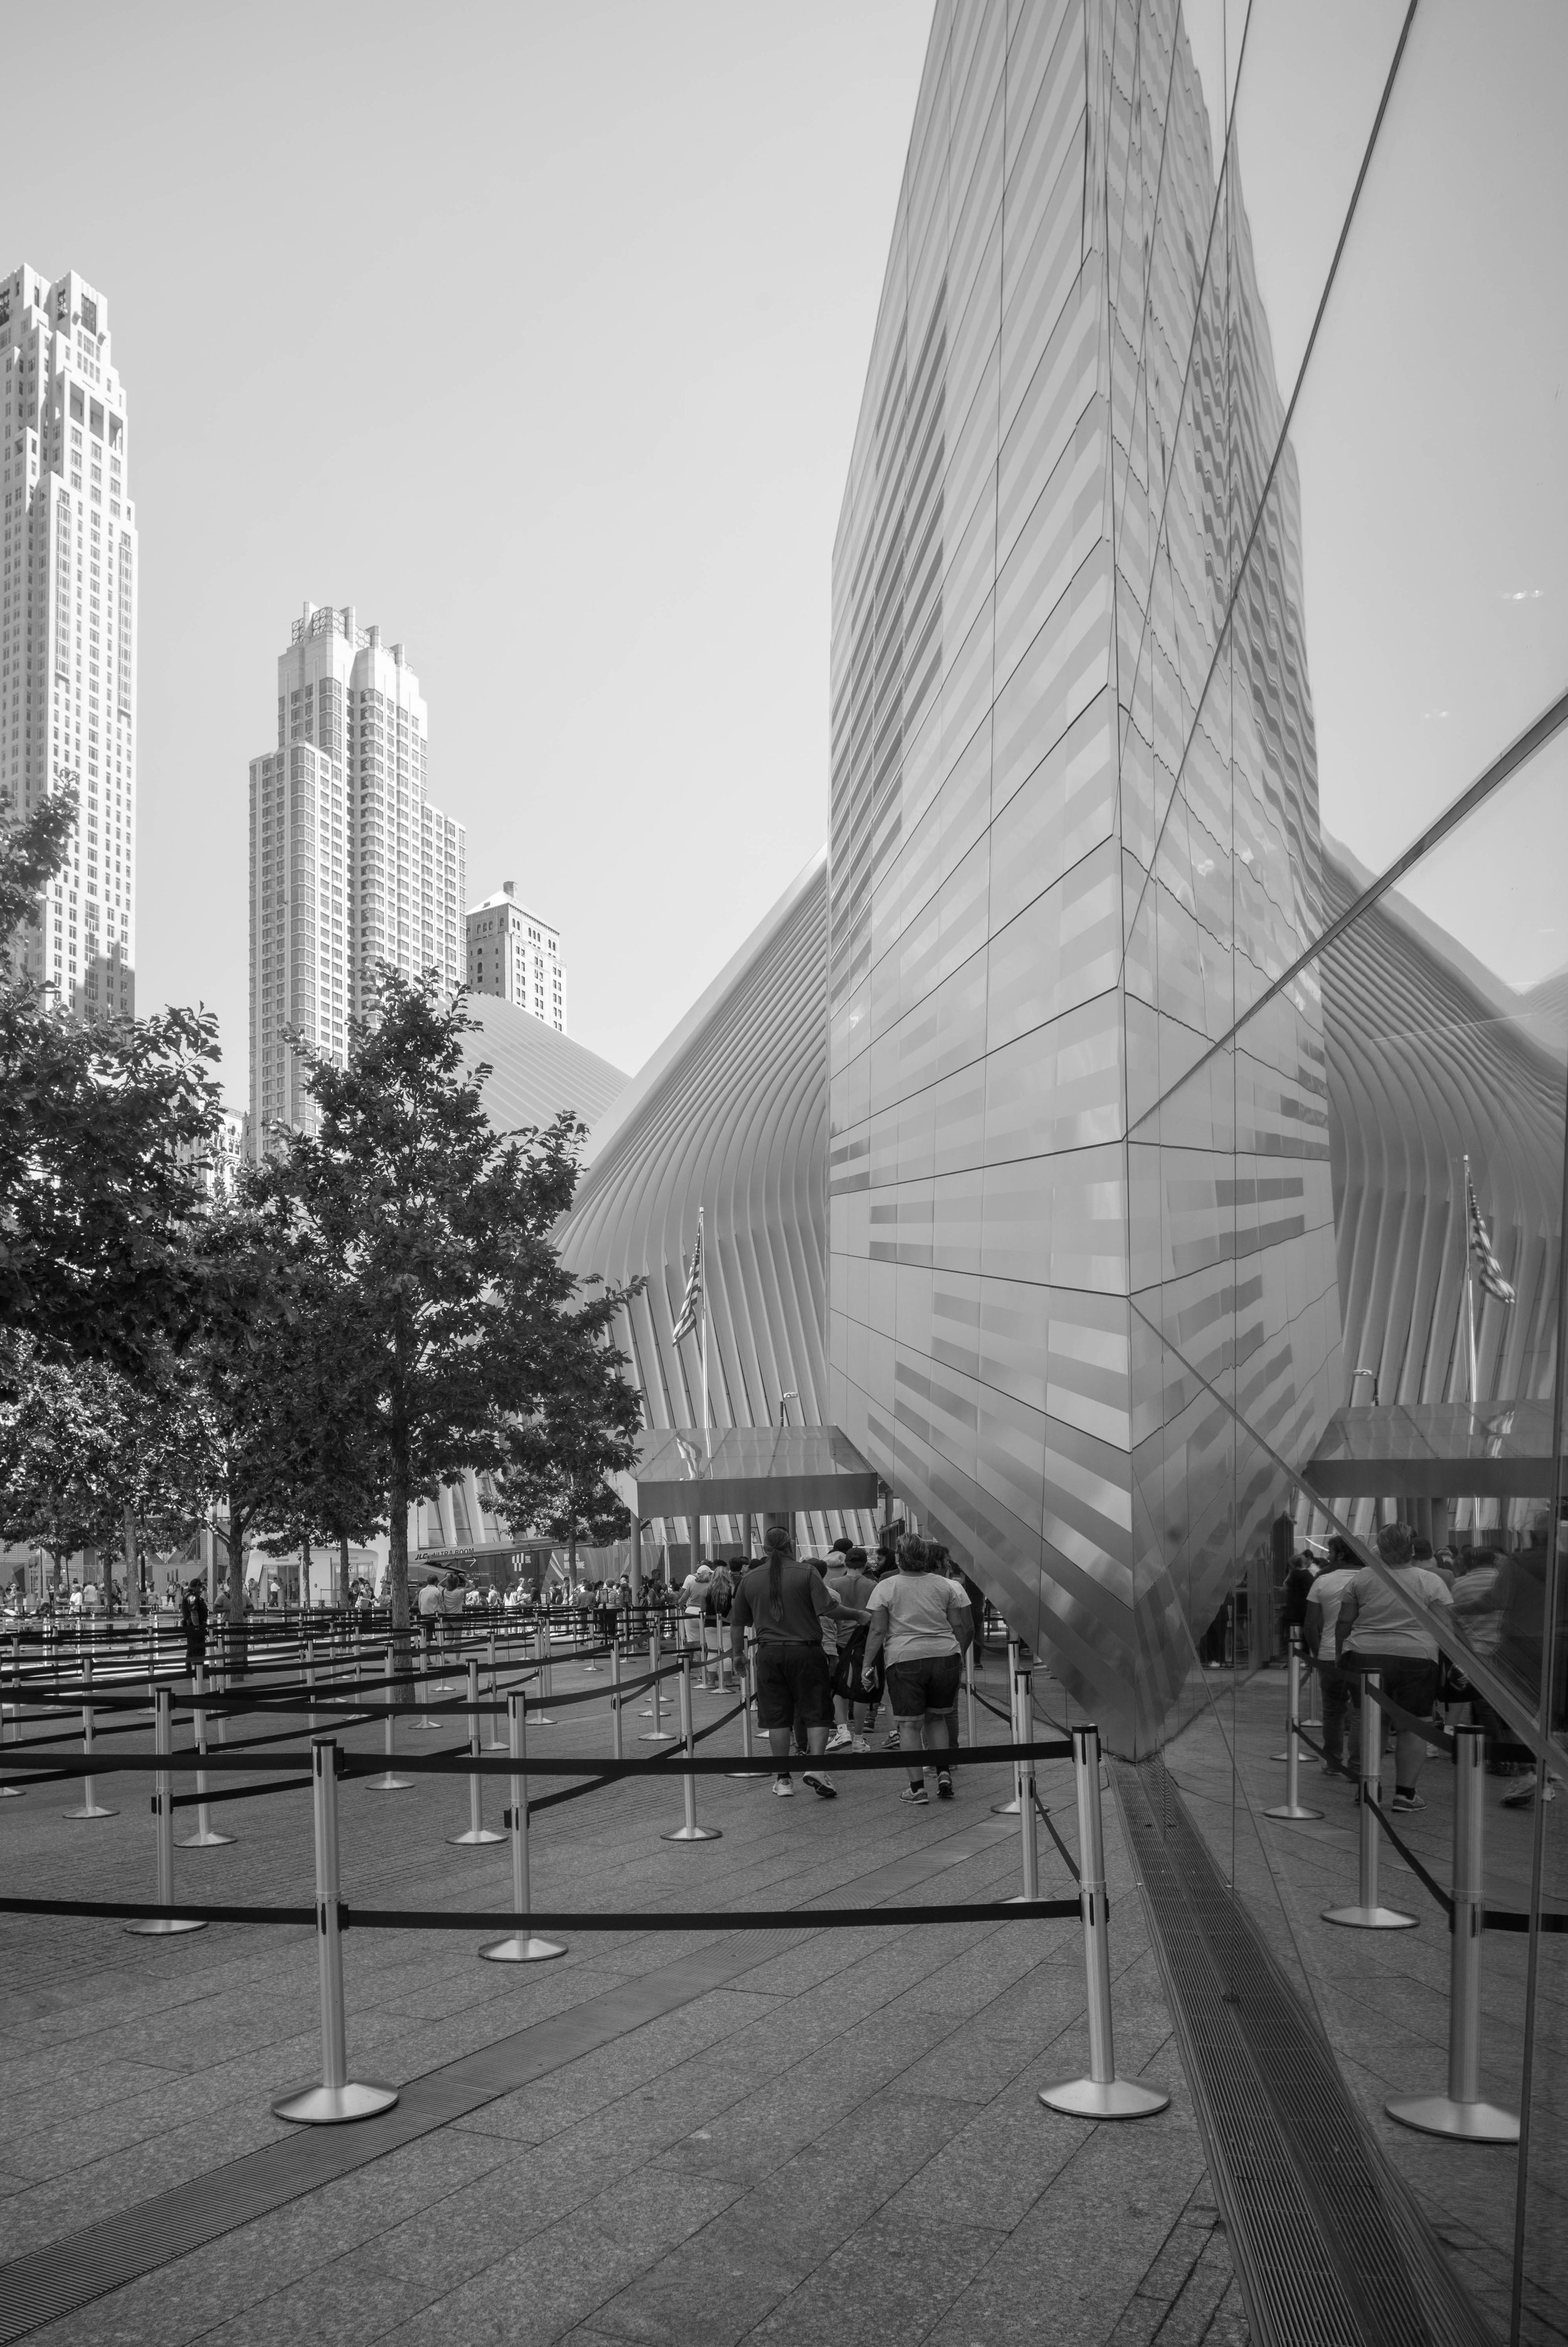 9/11 Museum